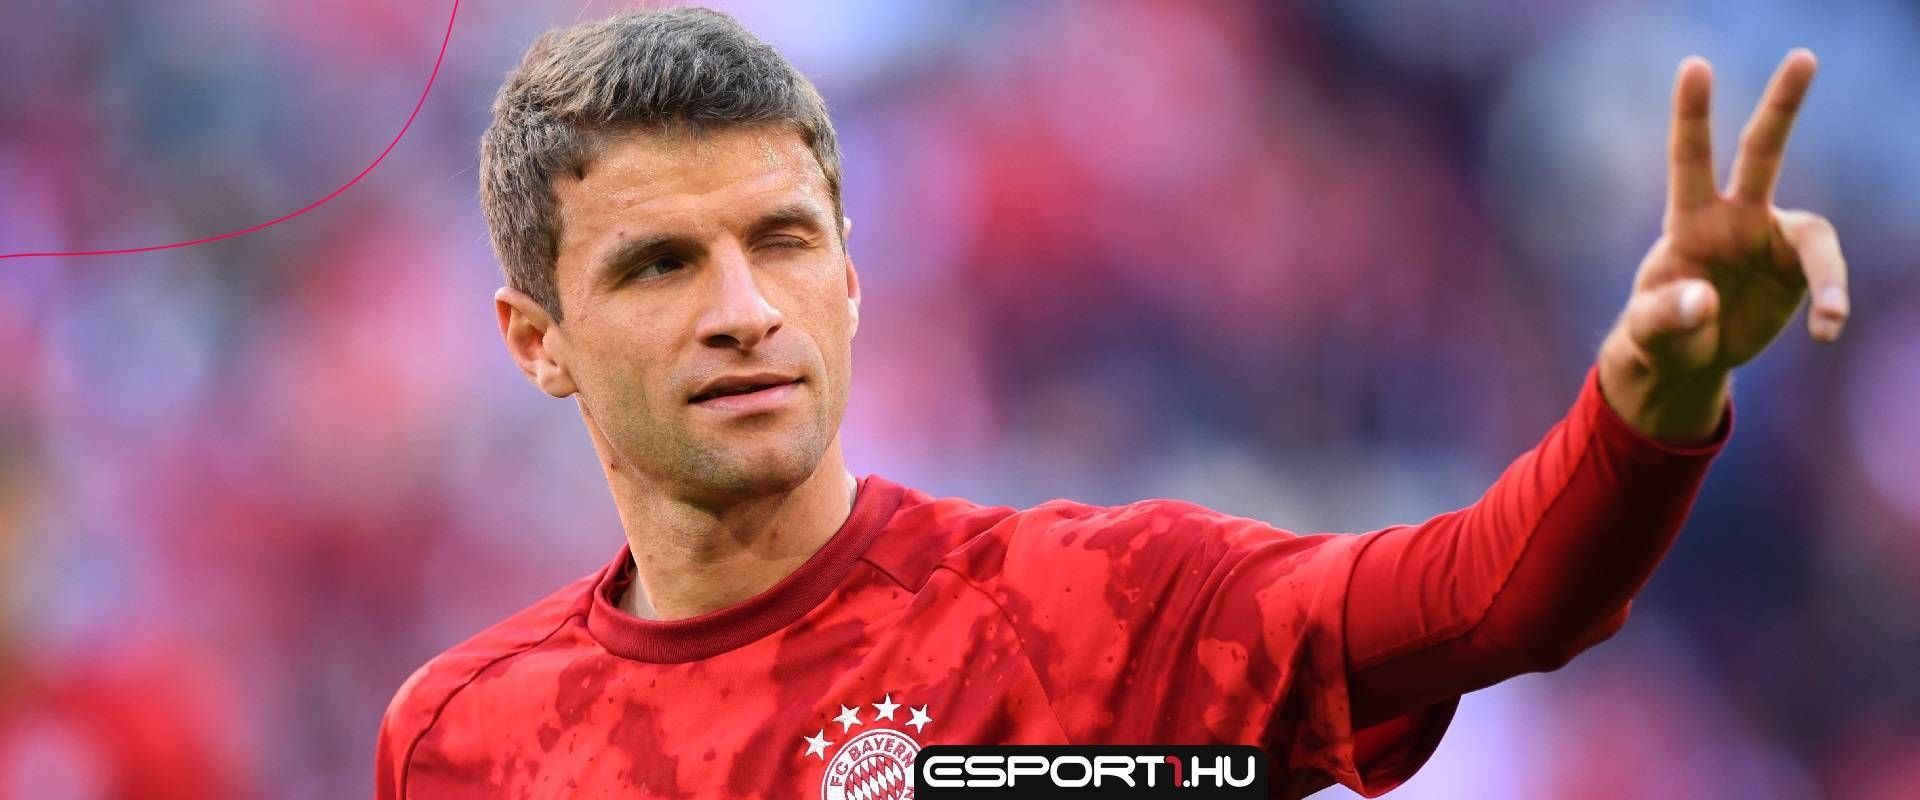 Egyvalaki miatt nagyobb ratinget kapott Thomas Müller a FIFA18-ban, mint tervben volt